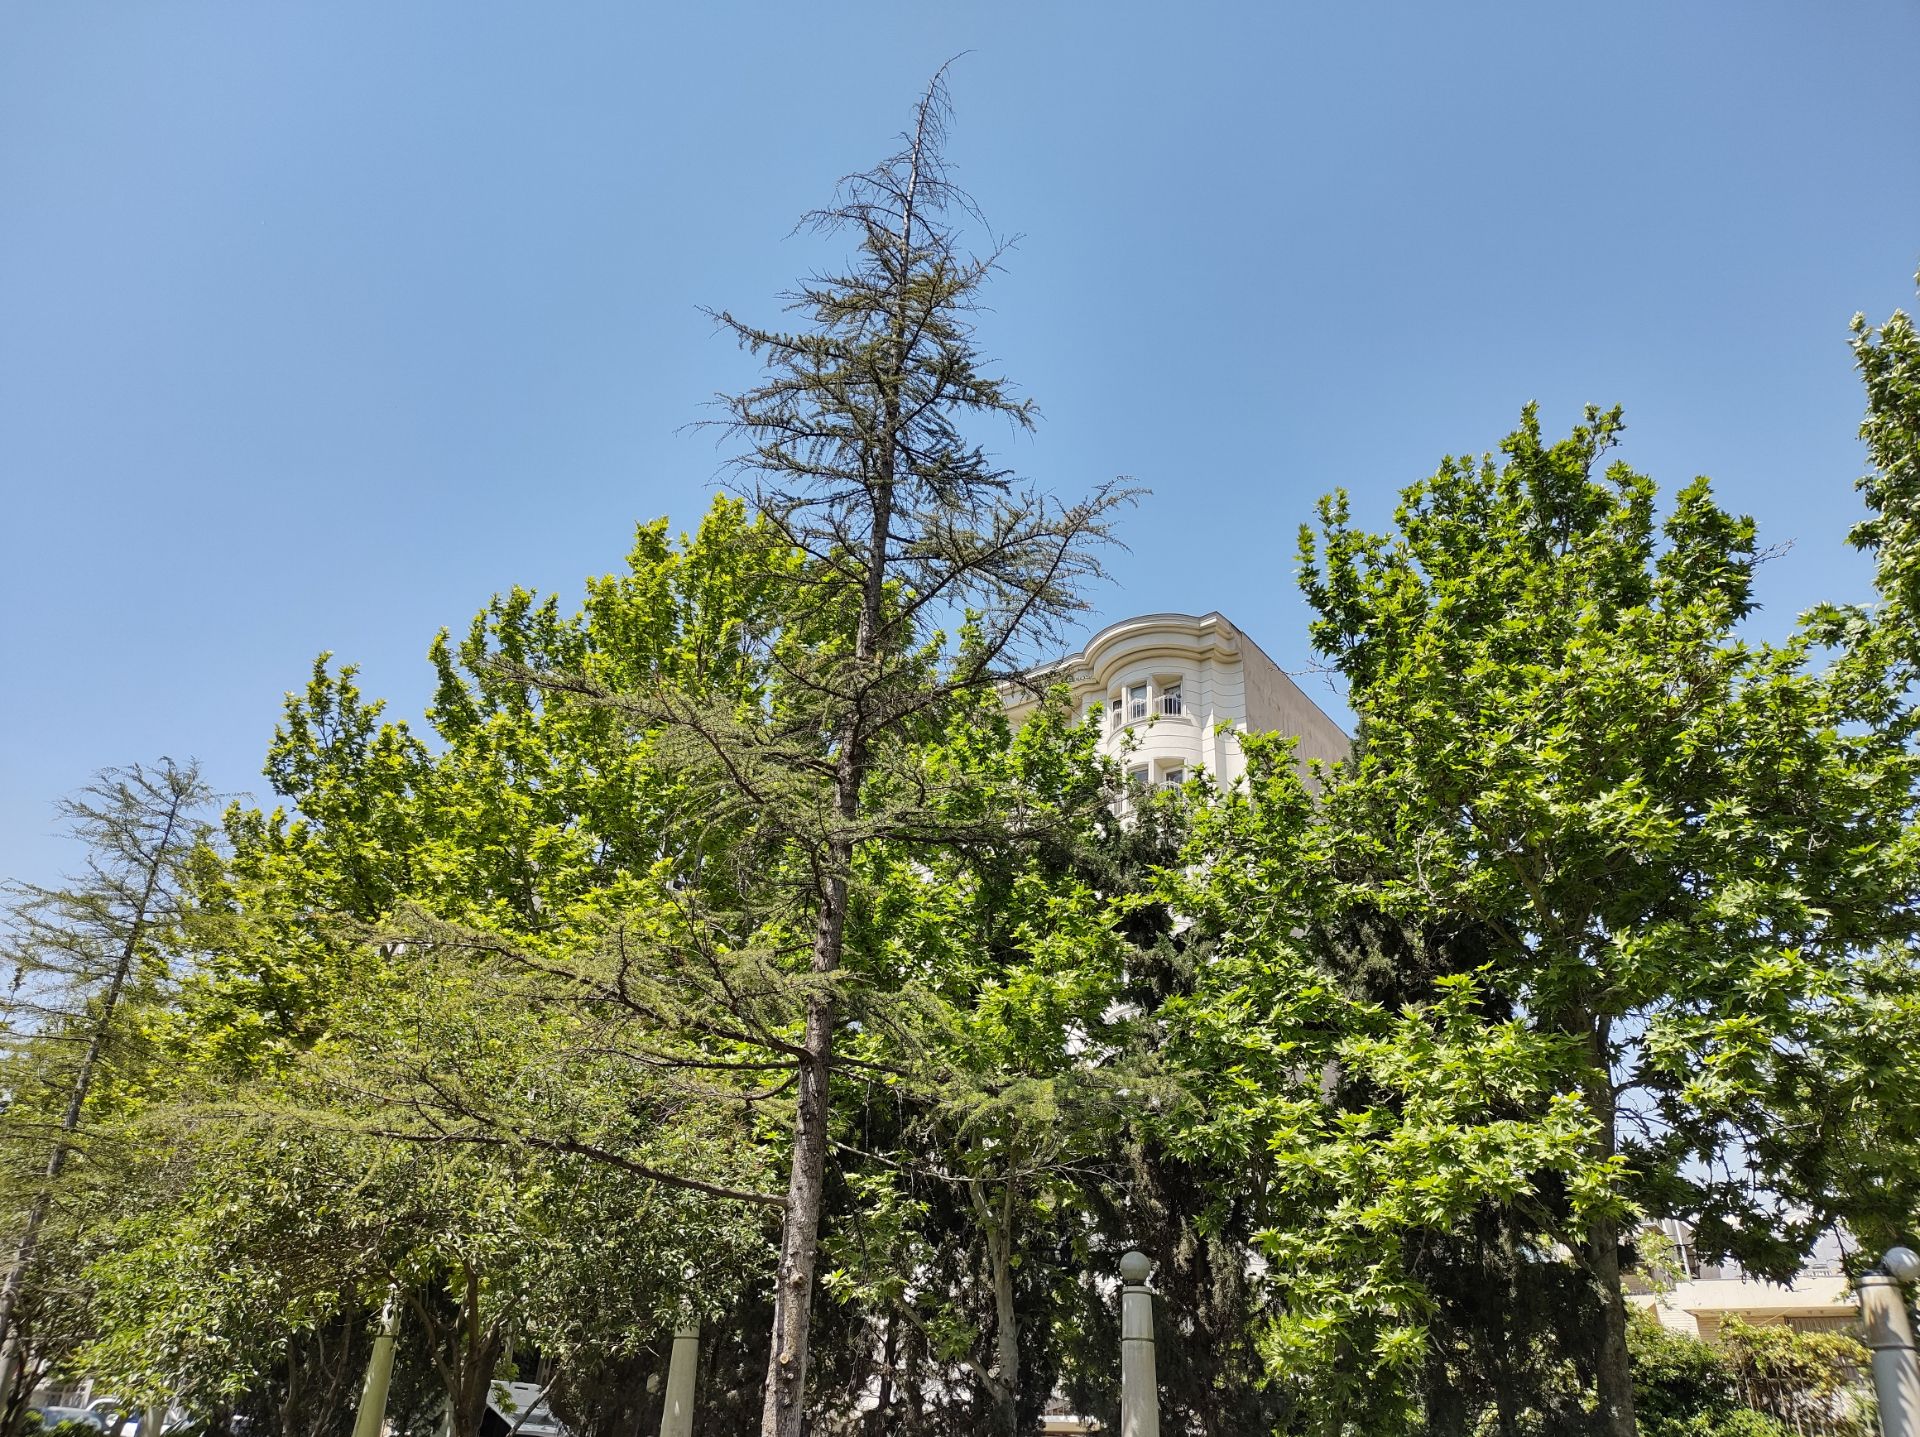 نمونه عکس دوربین اصلی موتورولا موتو جی ۹ پلاس در روز - درختان